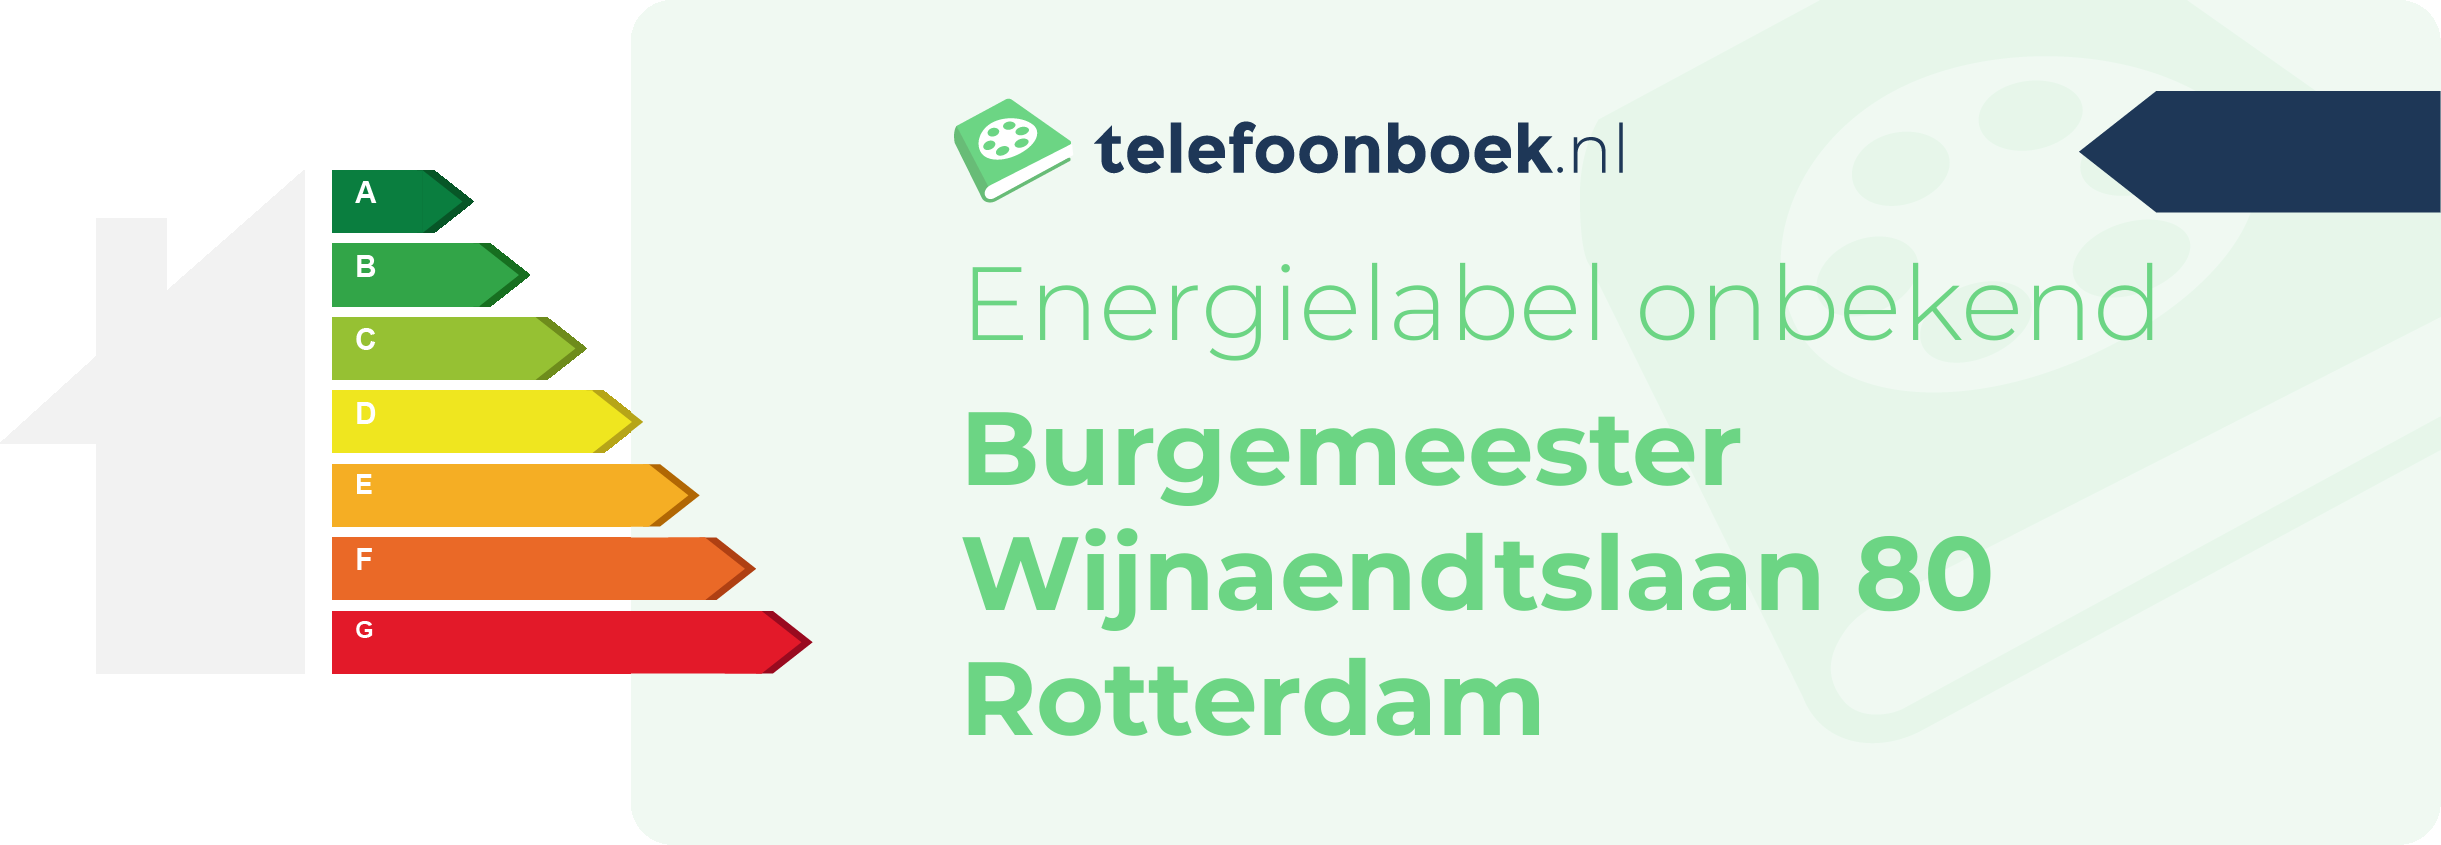 Energielabel Burgemeester Wijnaendtslaan 80 Rotterdam